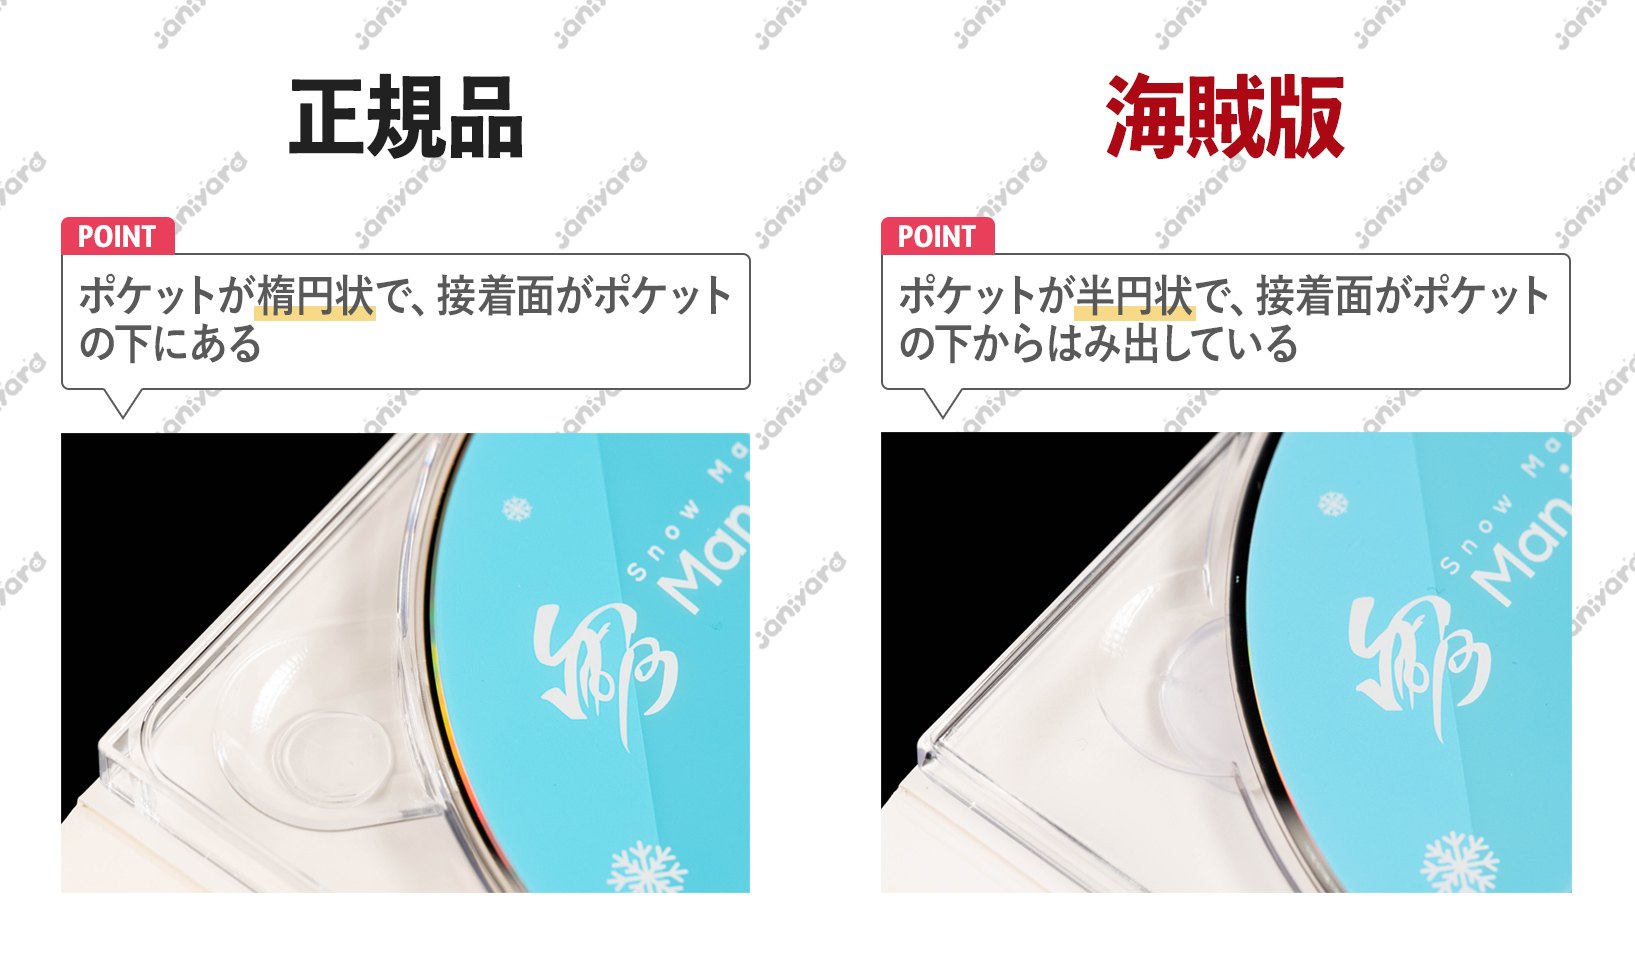 素顔4 Snow Man盤 ミュージック DVD/ブルーレイ 本・音楽・ゲーム 超特価品